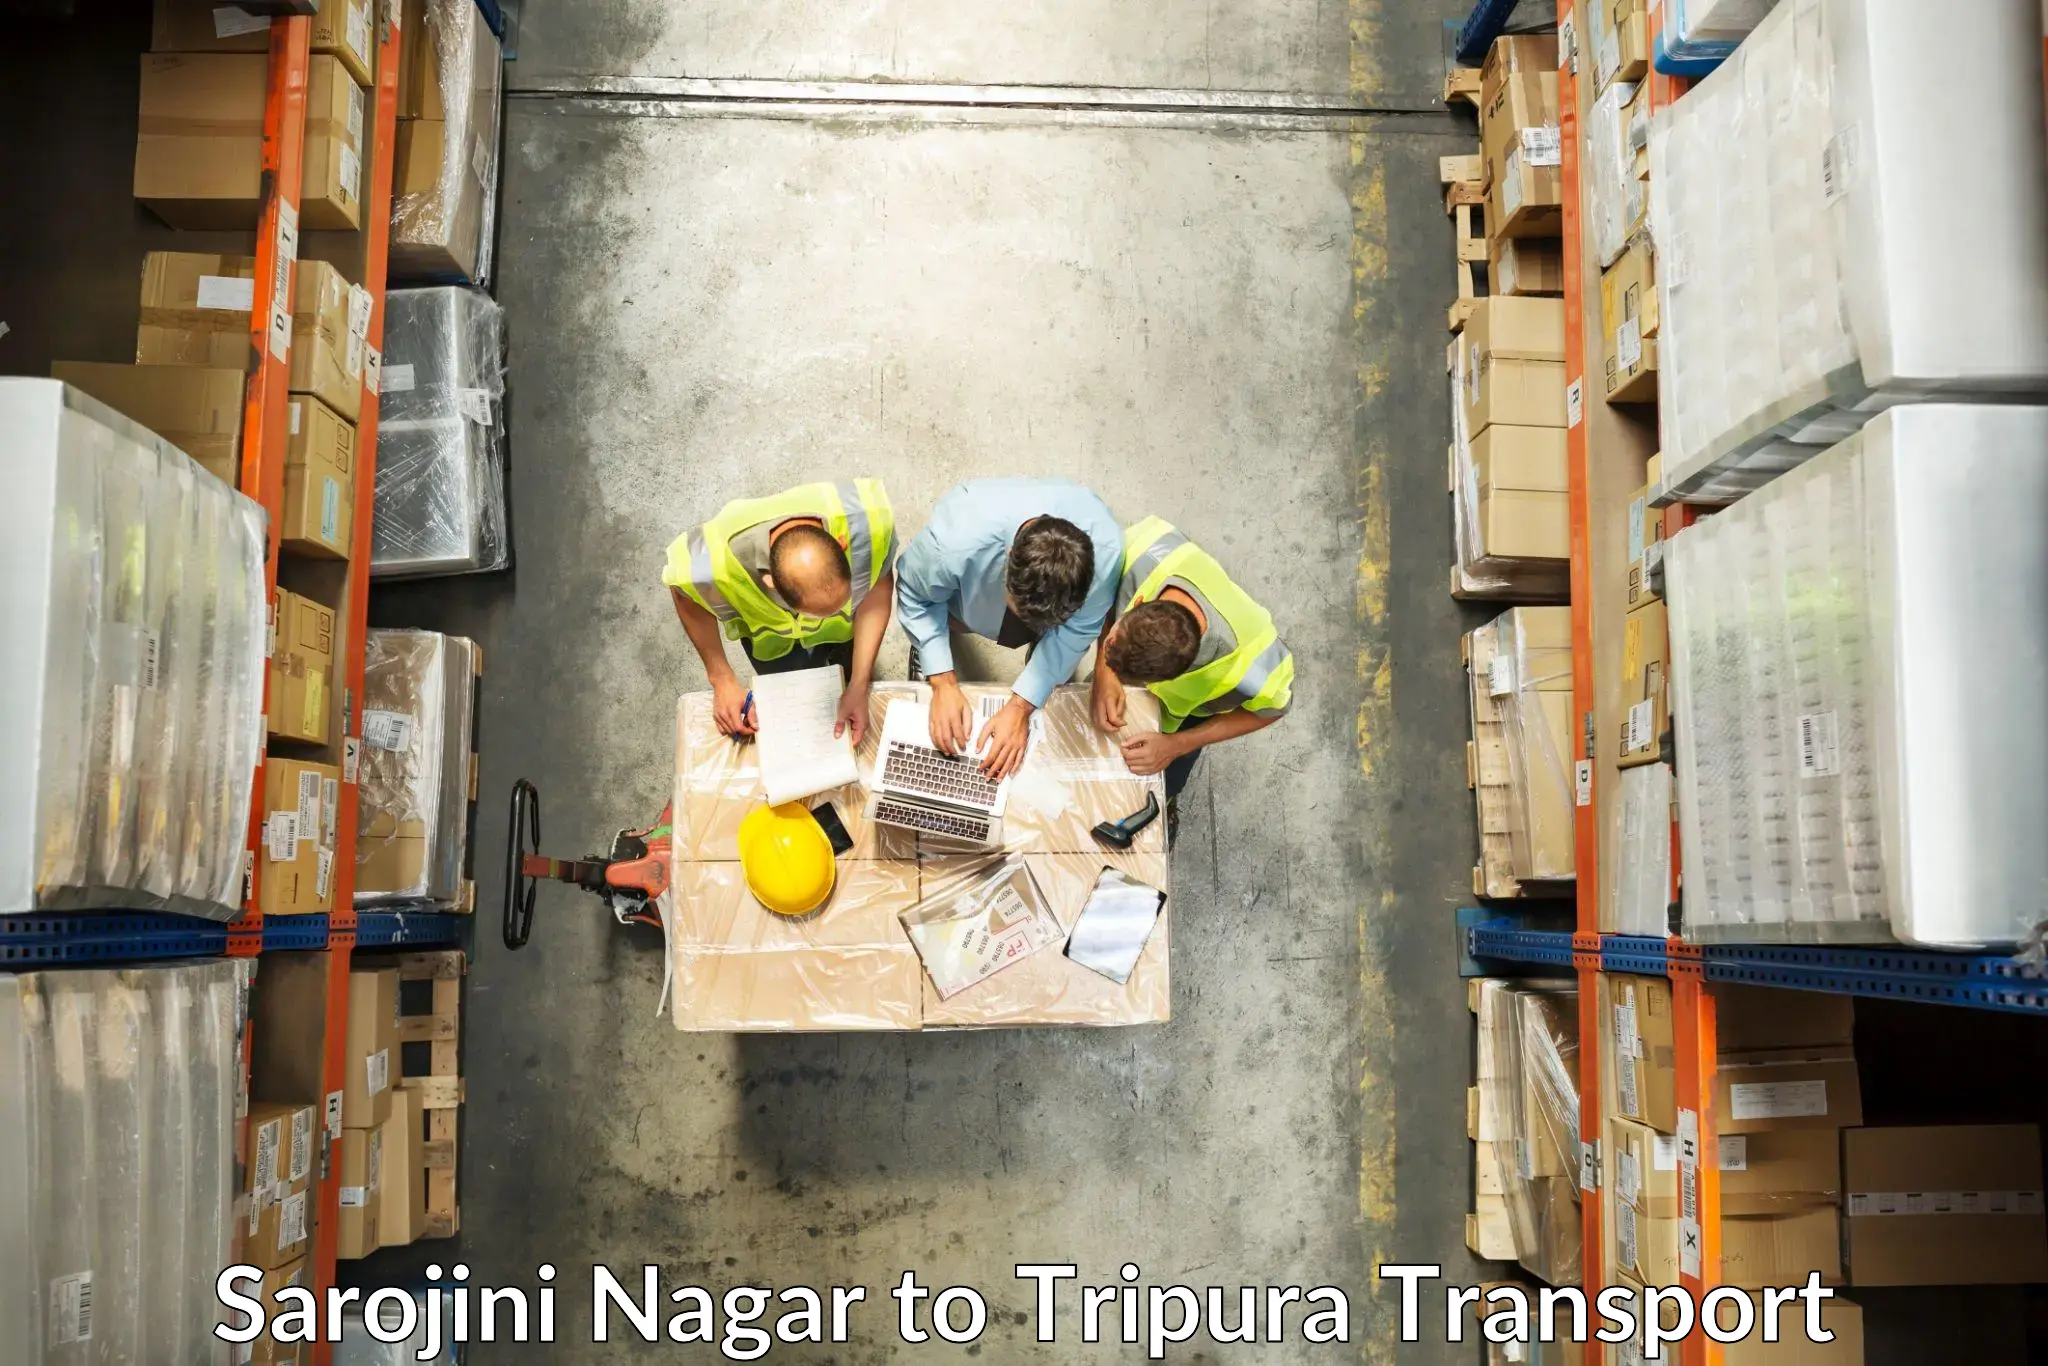 Part load transport service in India Sarojini Nagar to IIIT Agartala